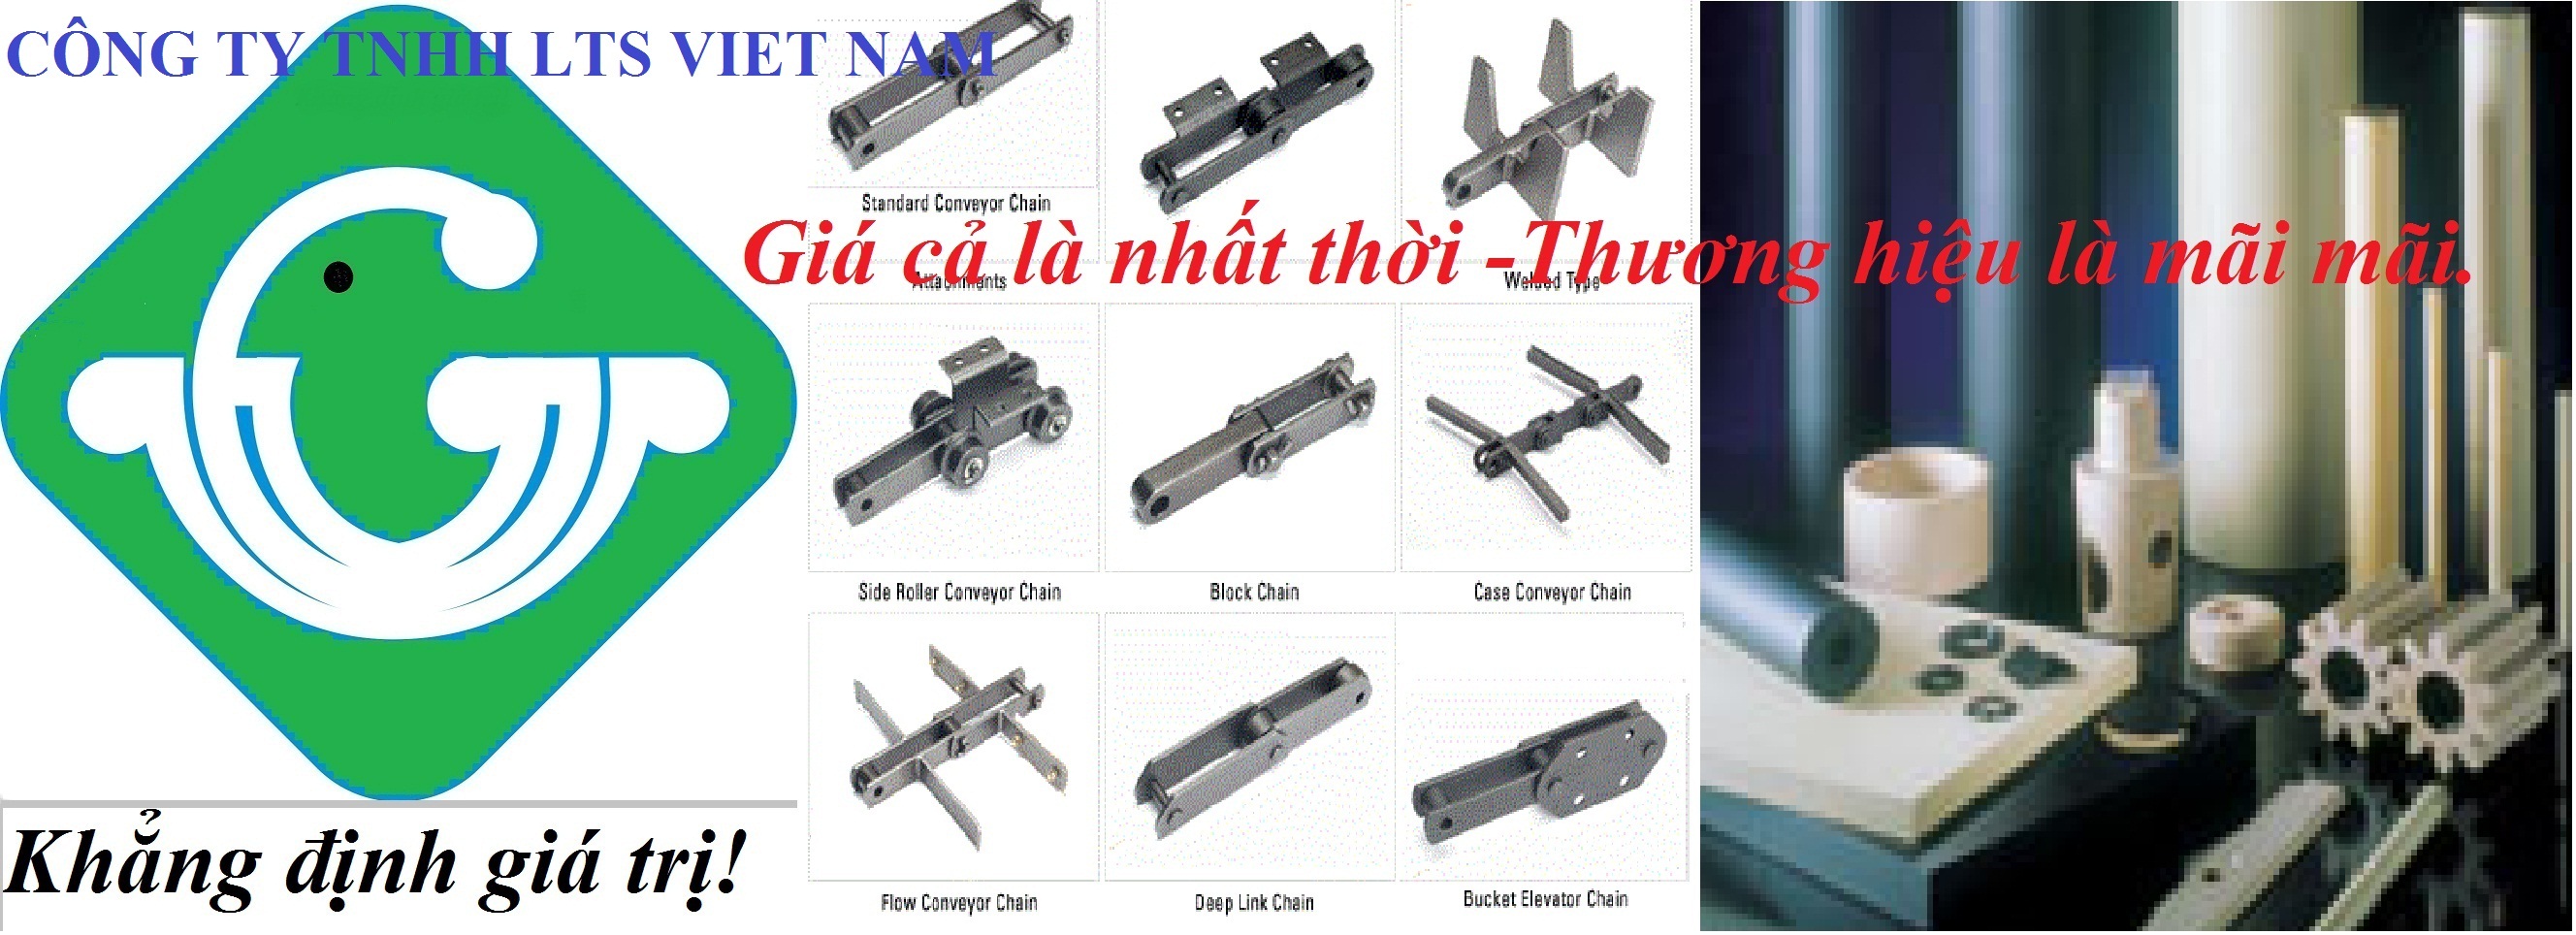 Công ty TNHH LTS Việt Nam